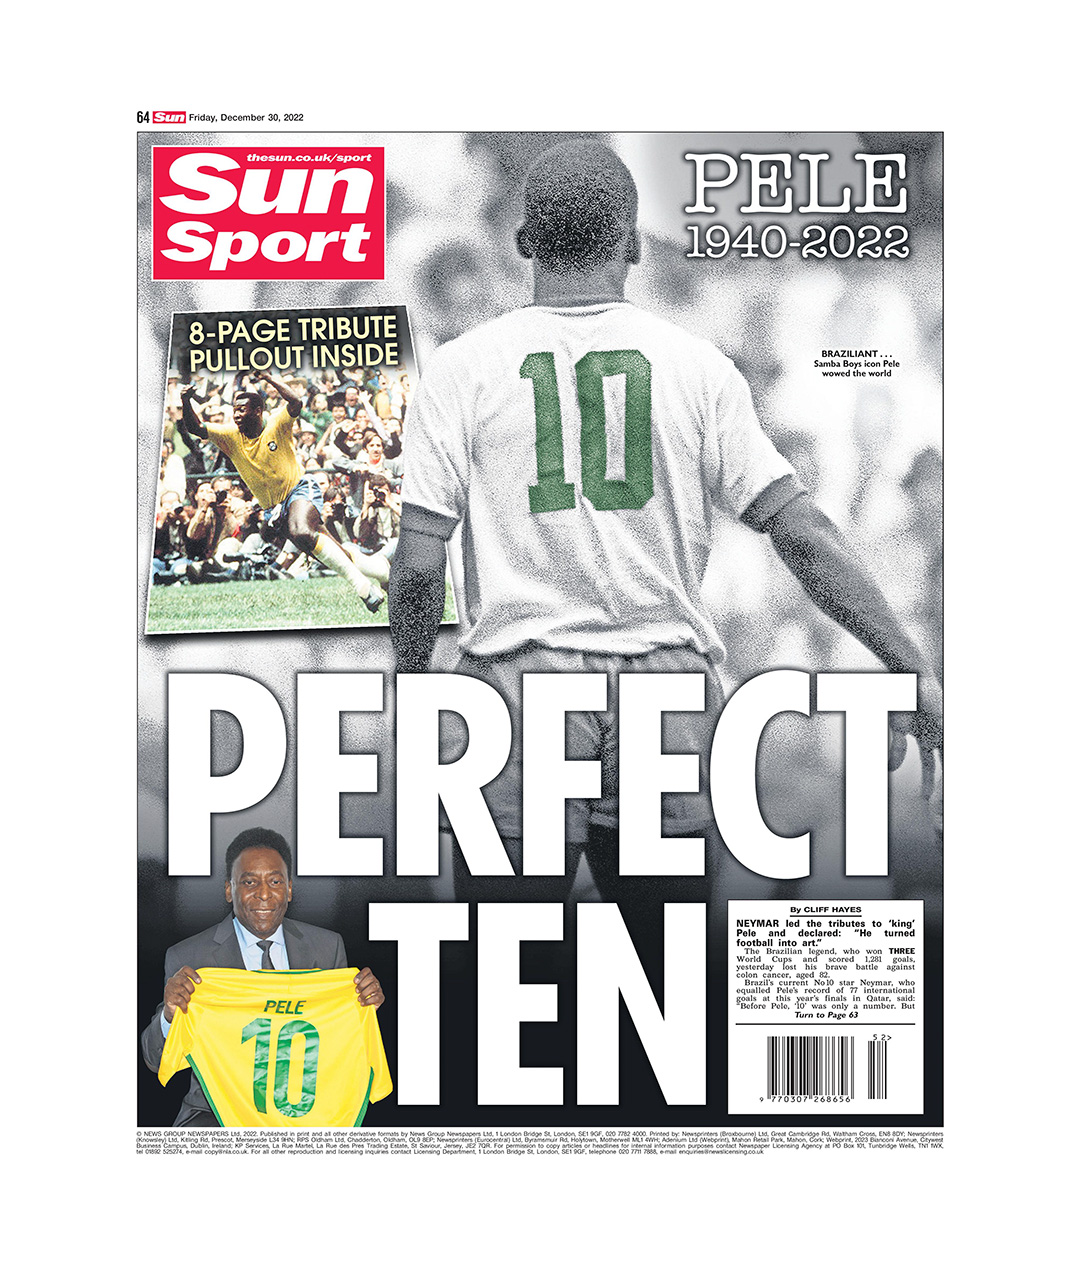 "Diez perfecto", el título de The Sun tras el fallecimiento de Pelé